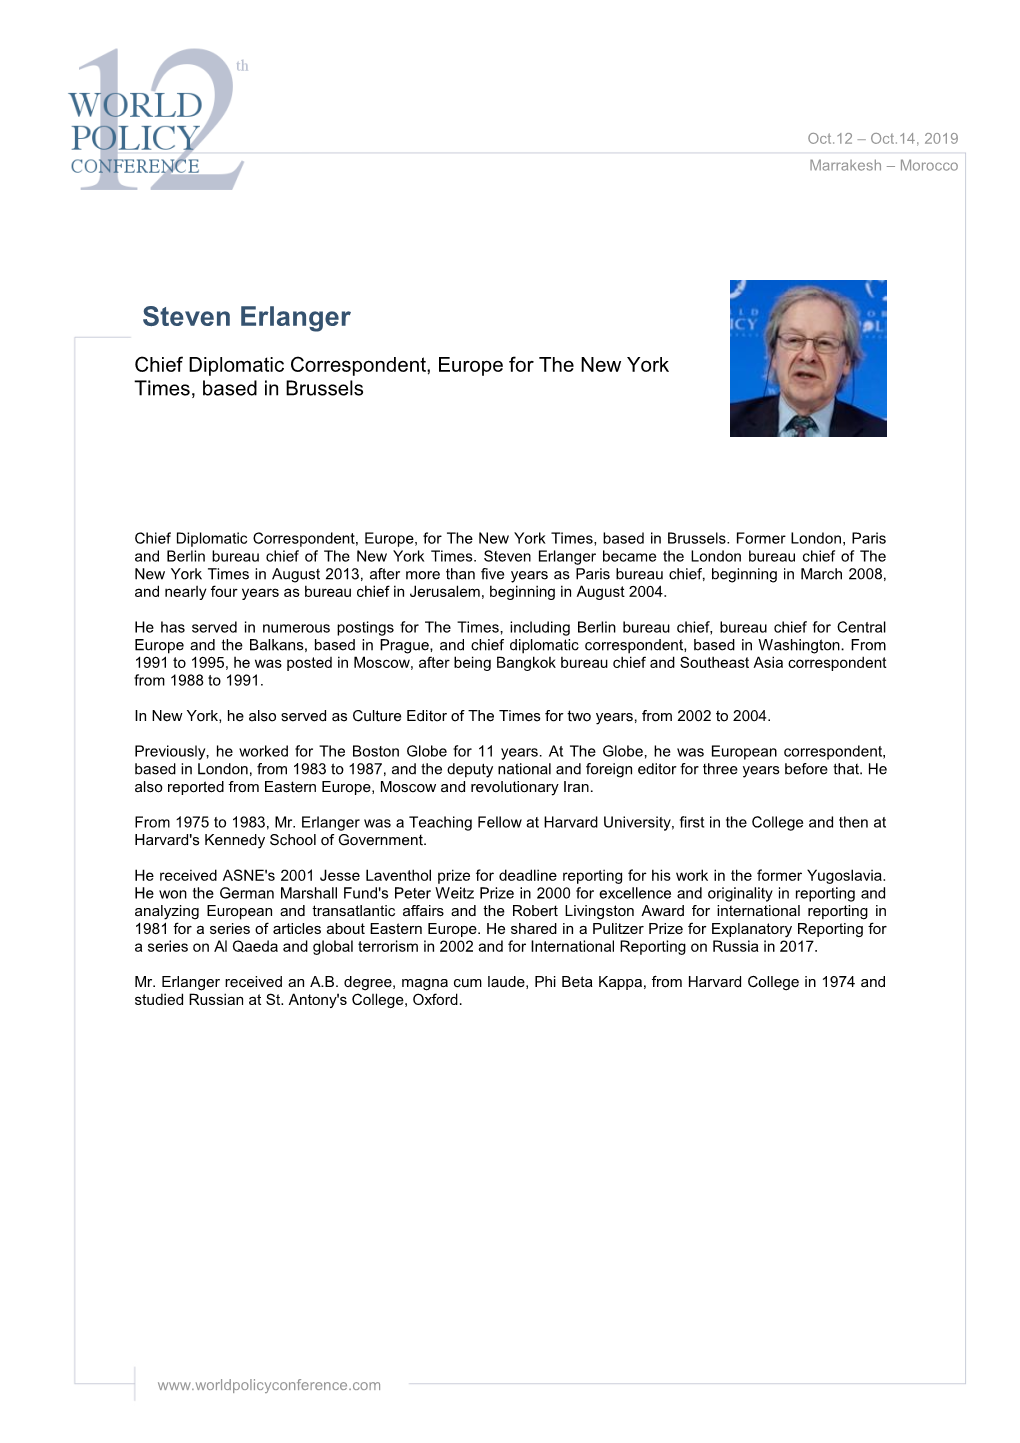 Steven Erlanger